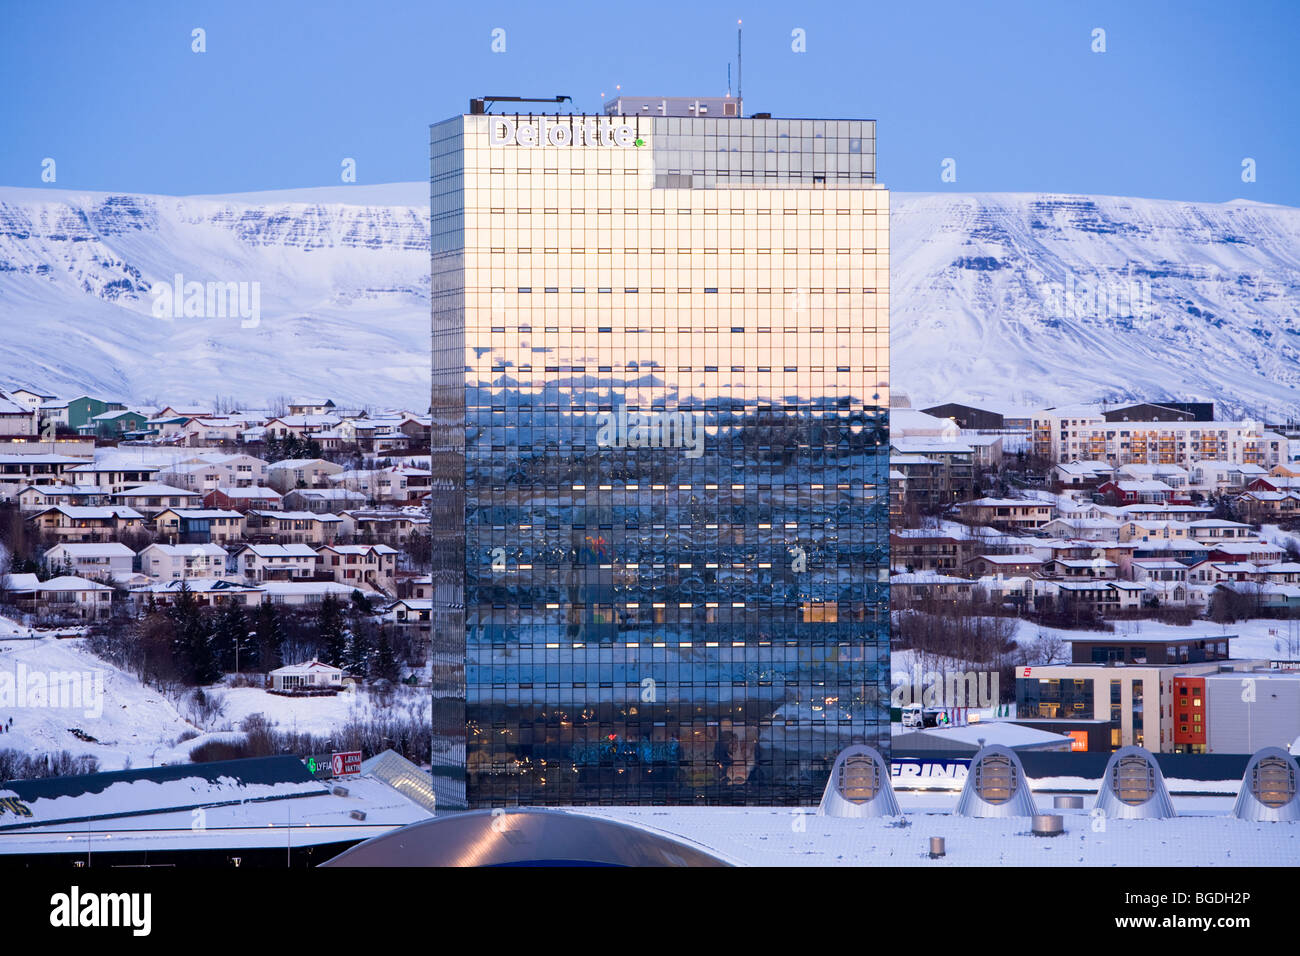 'Turninn' immeuble de bureaux de Deloitte siège à l'Islande. Kopavogur, une plus grande région de Reykjavik, Islande. Banque D'Images